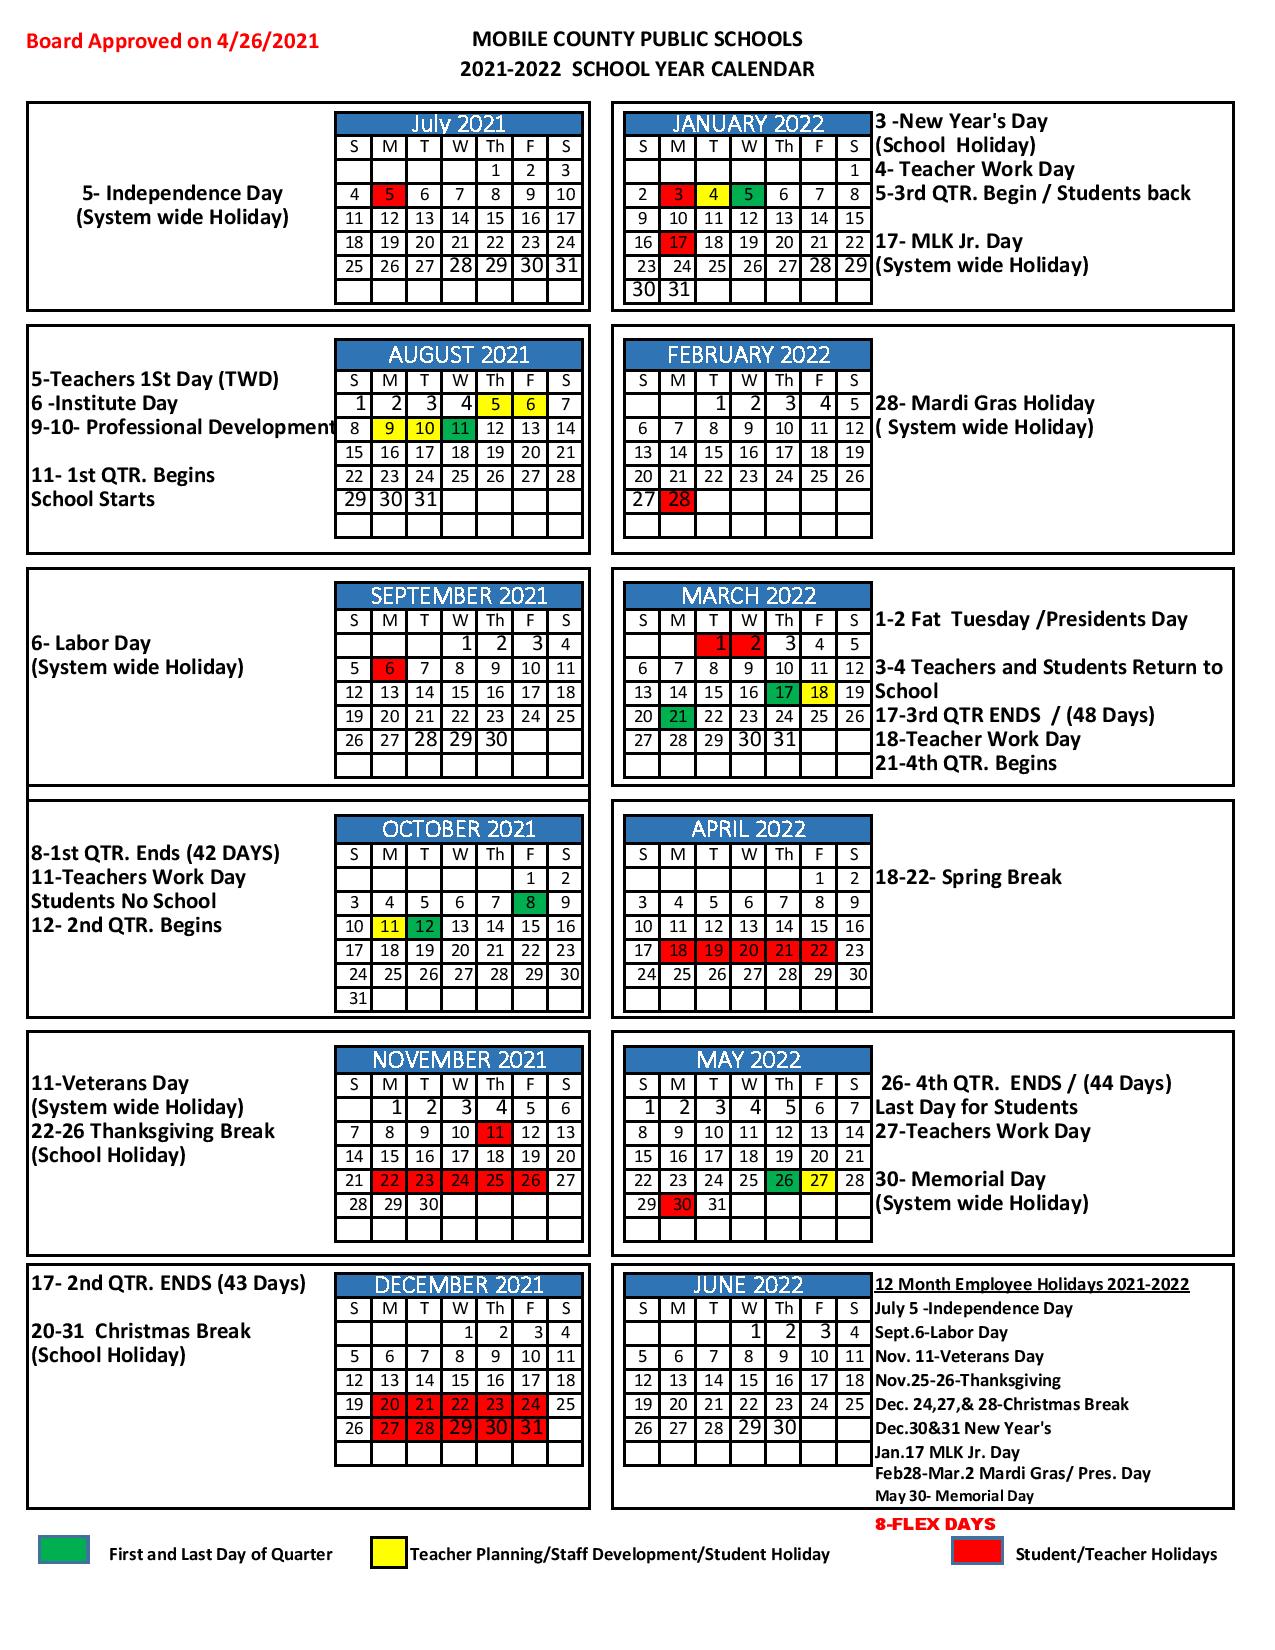 Mcpss Calendar 2022 23 Mobile County Public Schools Calendar 2021-2022